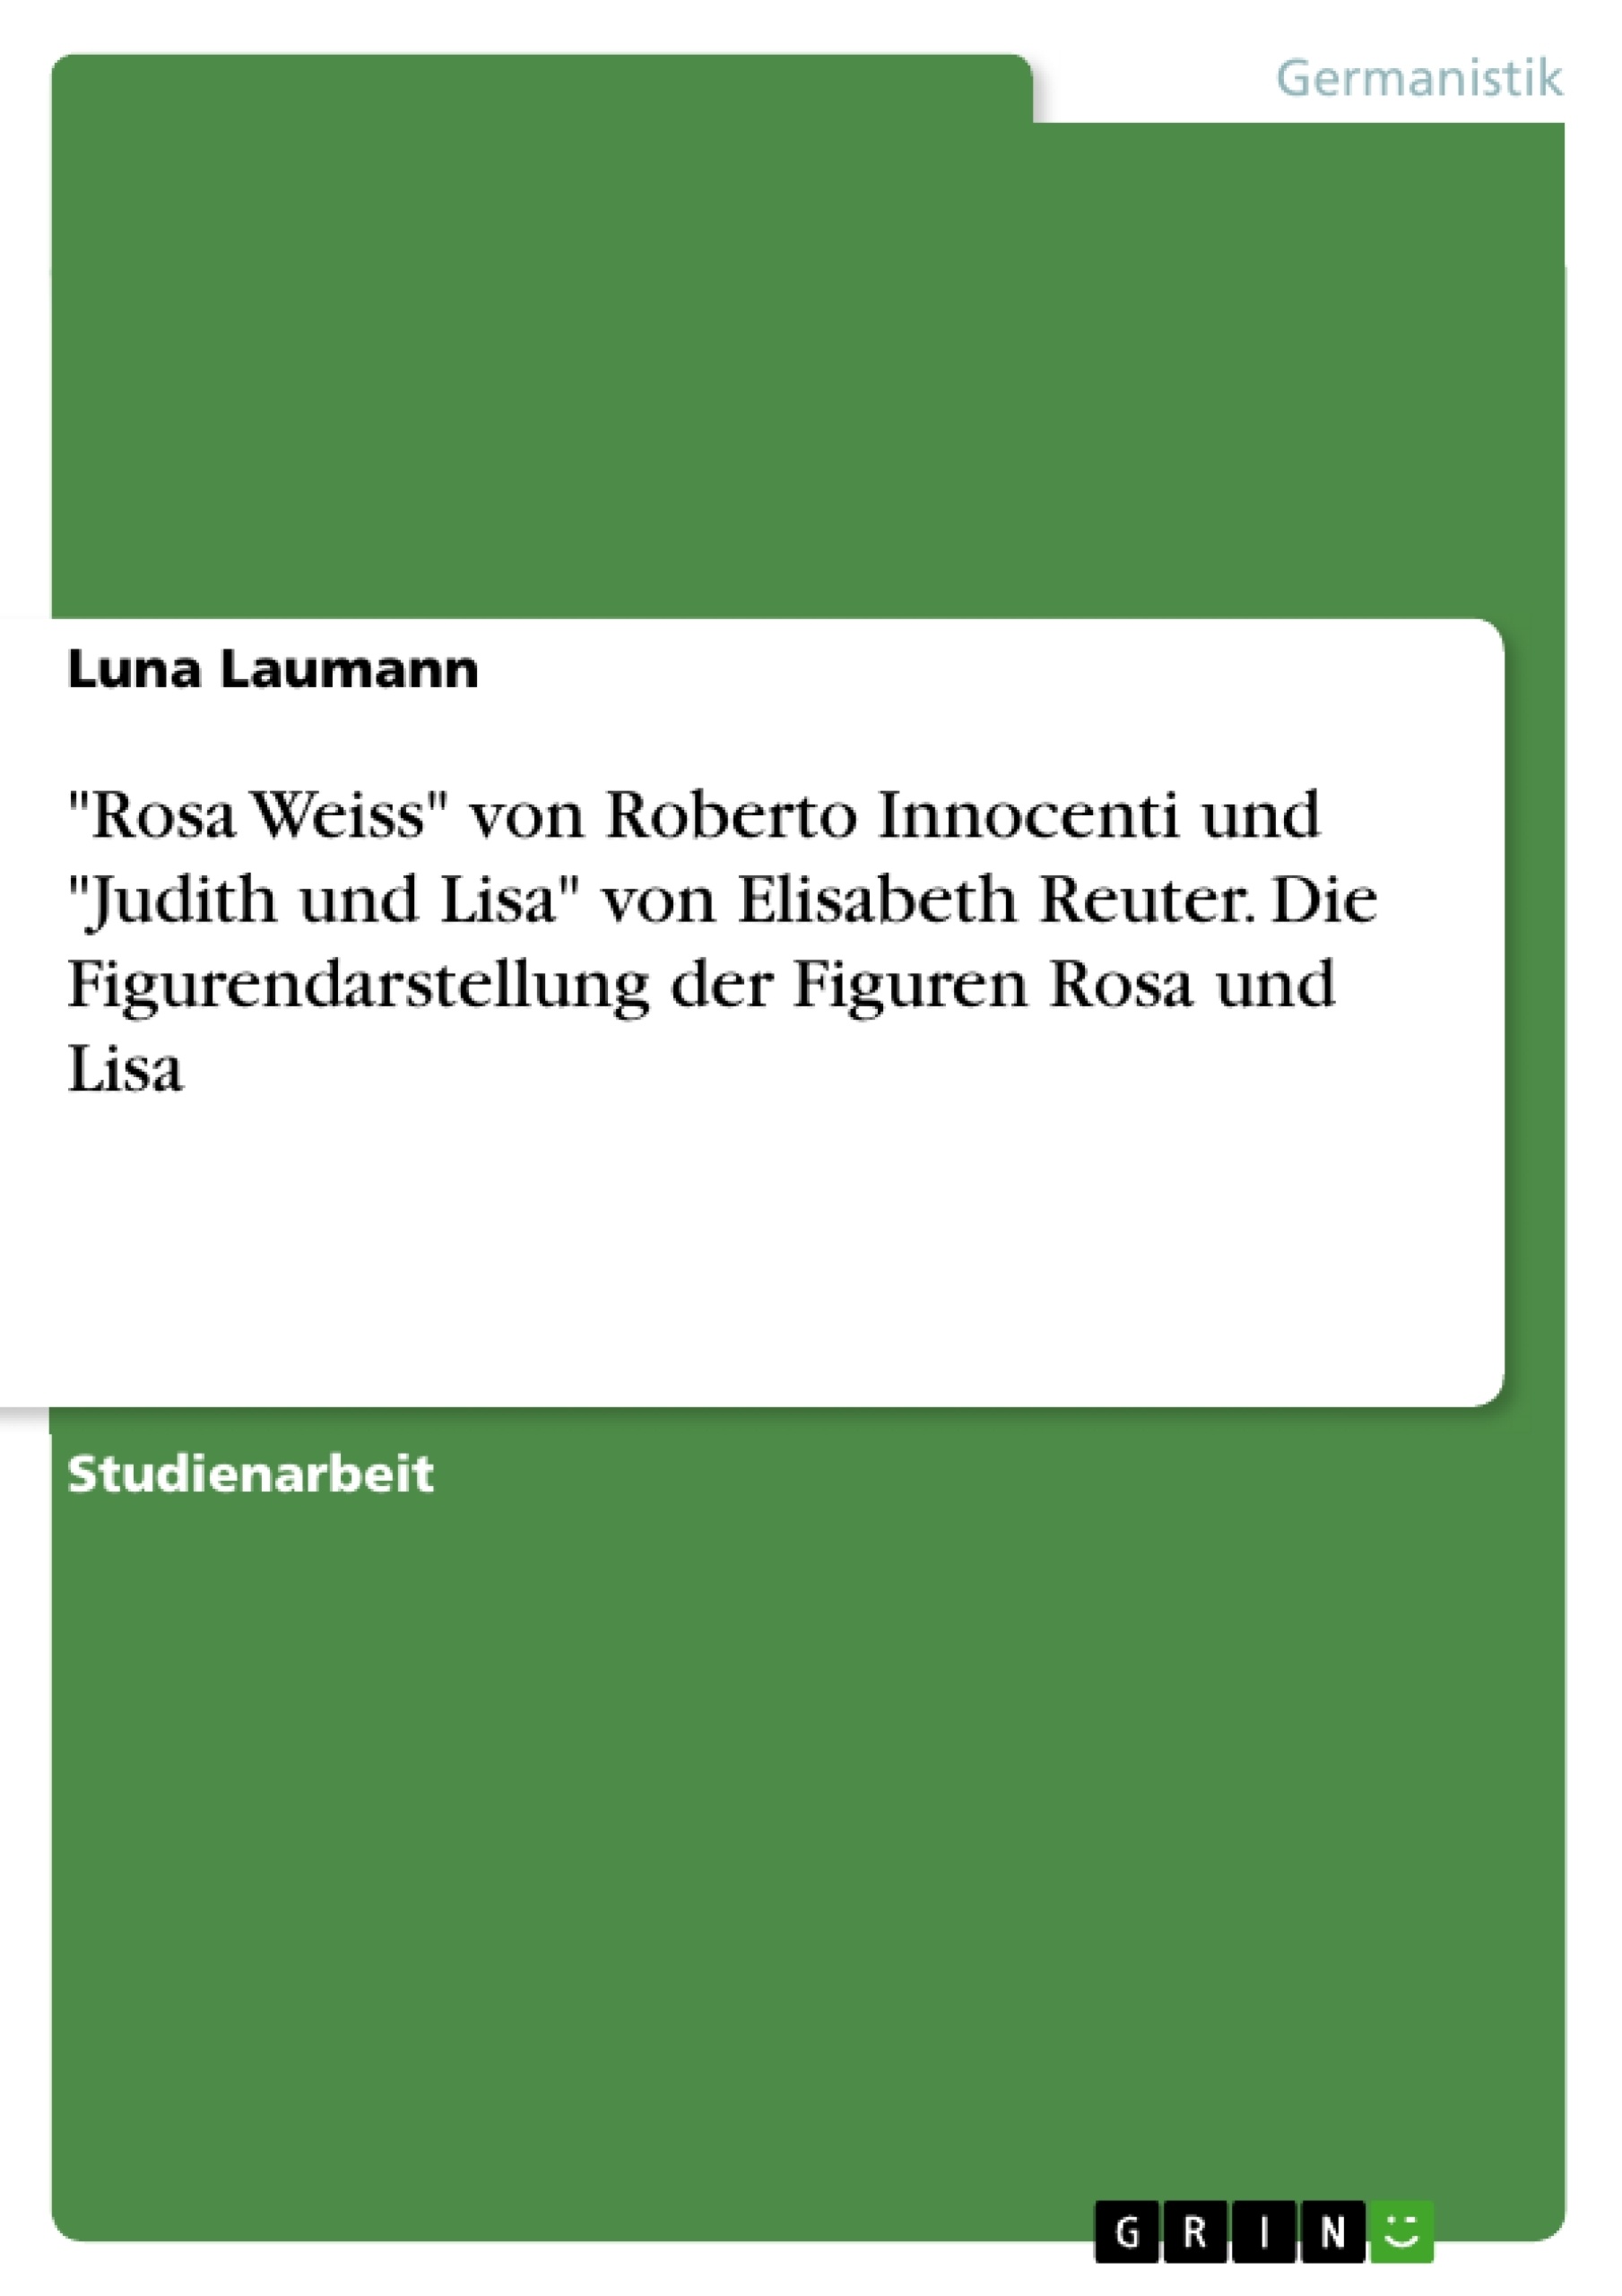 Title: "Rosa Weiss" von Roberto Innocenti und "Judith und Lisa" von Elisabeth Reuter. Die Figurendarstellung der Figuren Rosa und Lisa